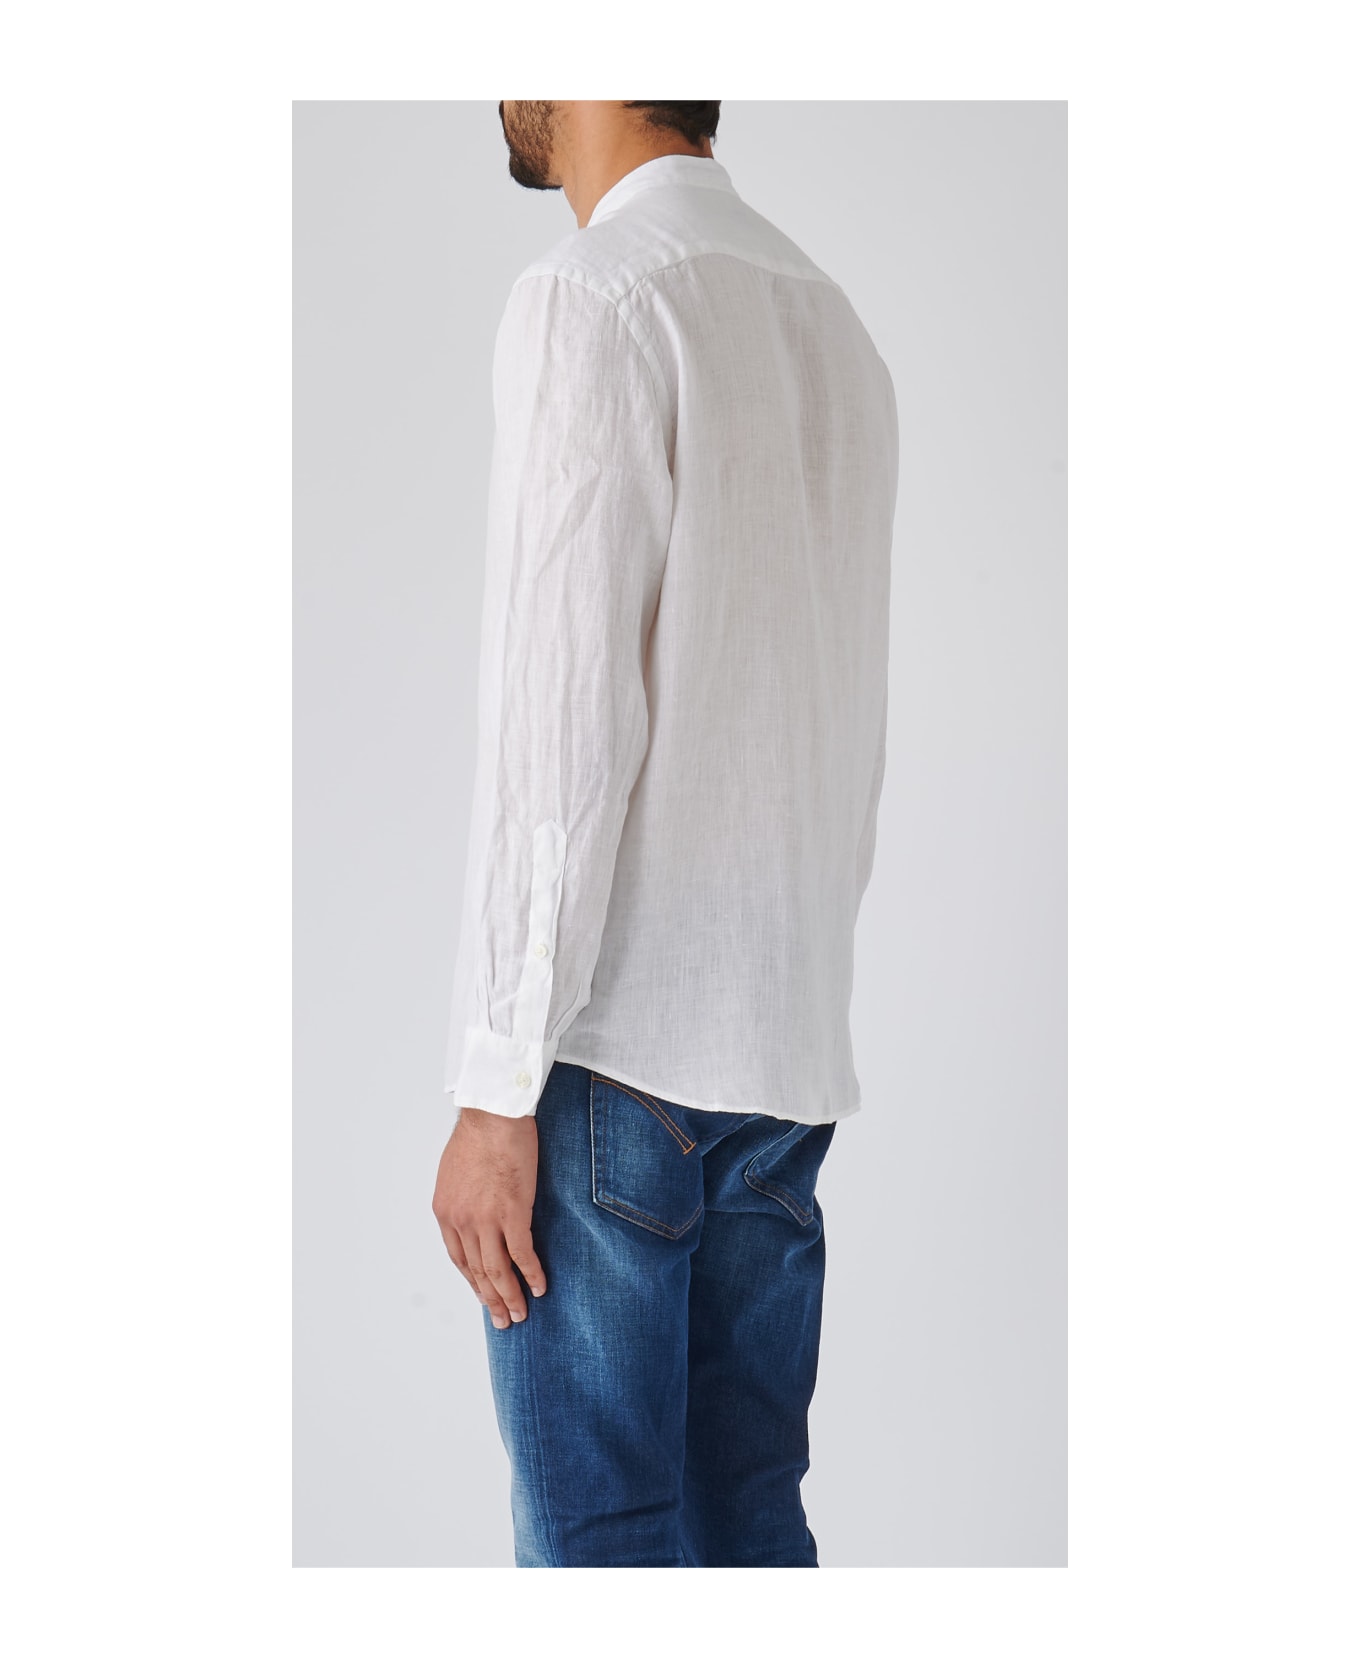 Altea Camicia Uomo Shirt - BIANCO シャツ